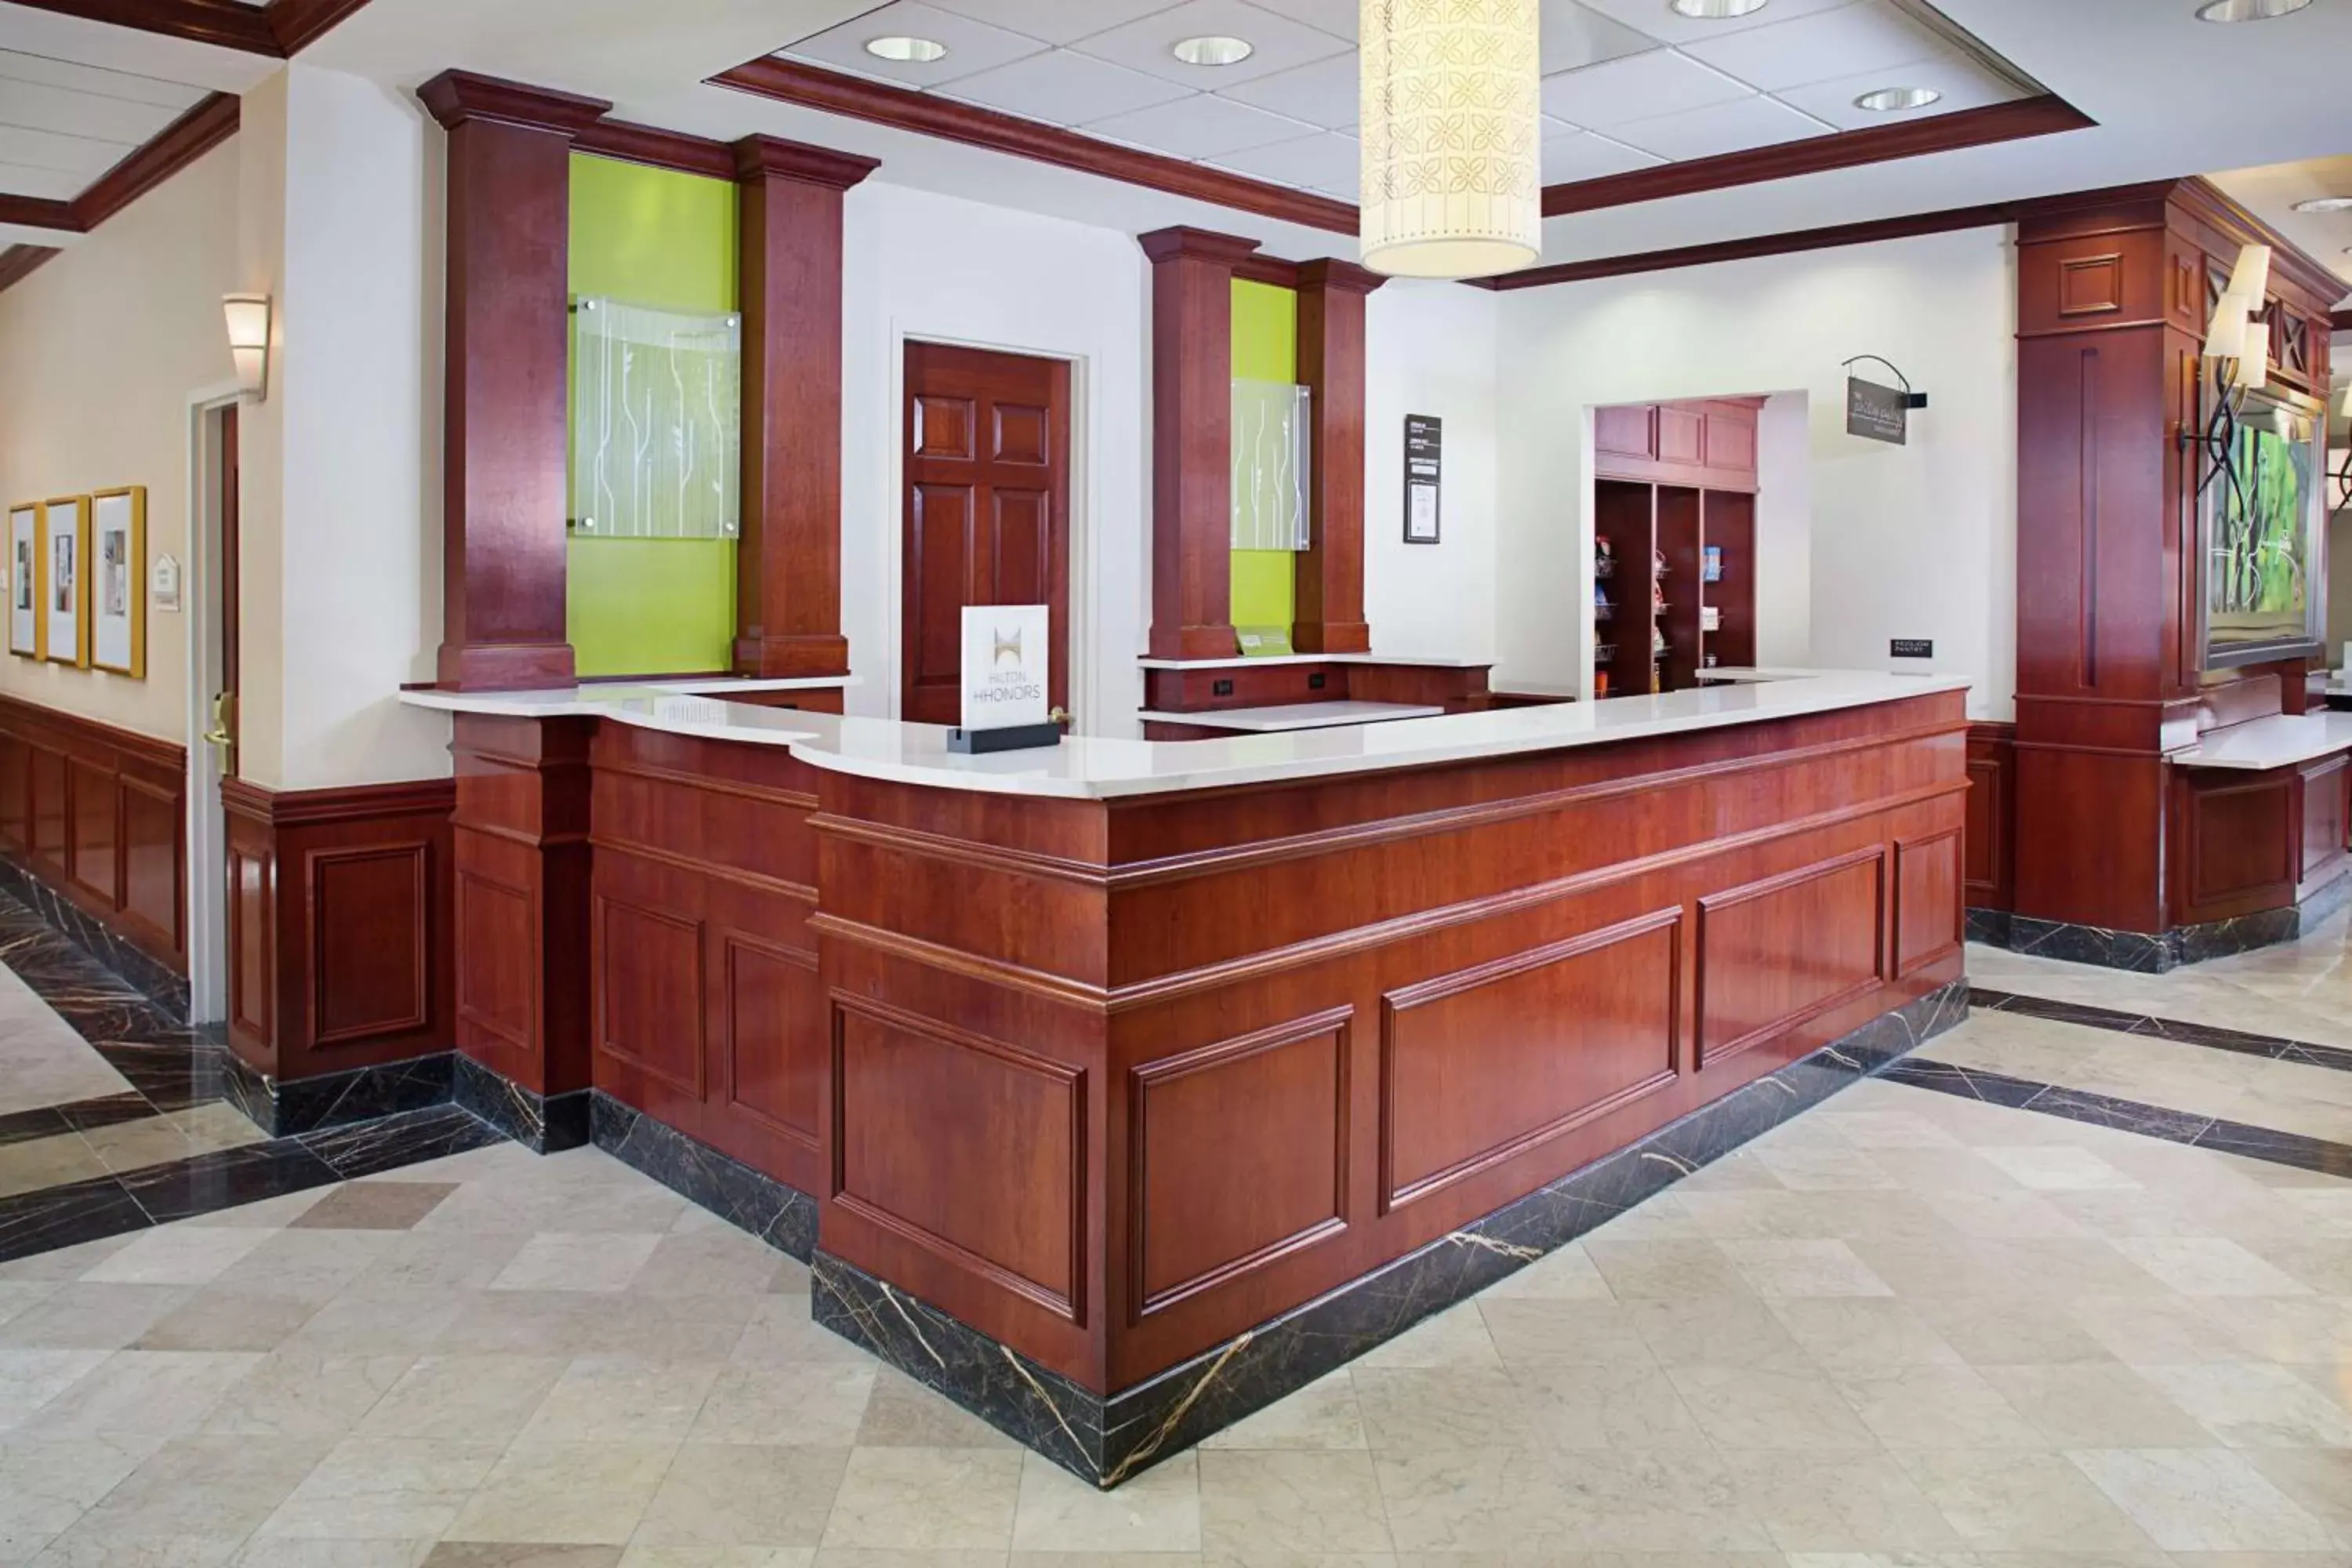 Lobby or reception, Lobby/Reception in Hilton Garden Inn Virginia Beach Town Center